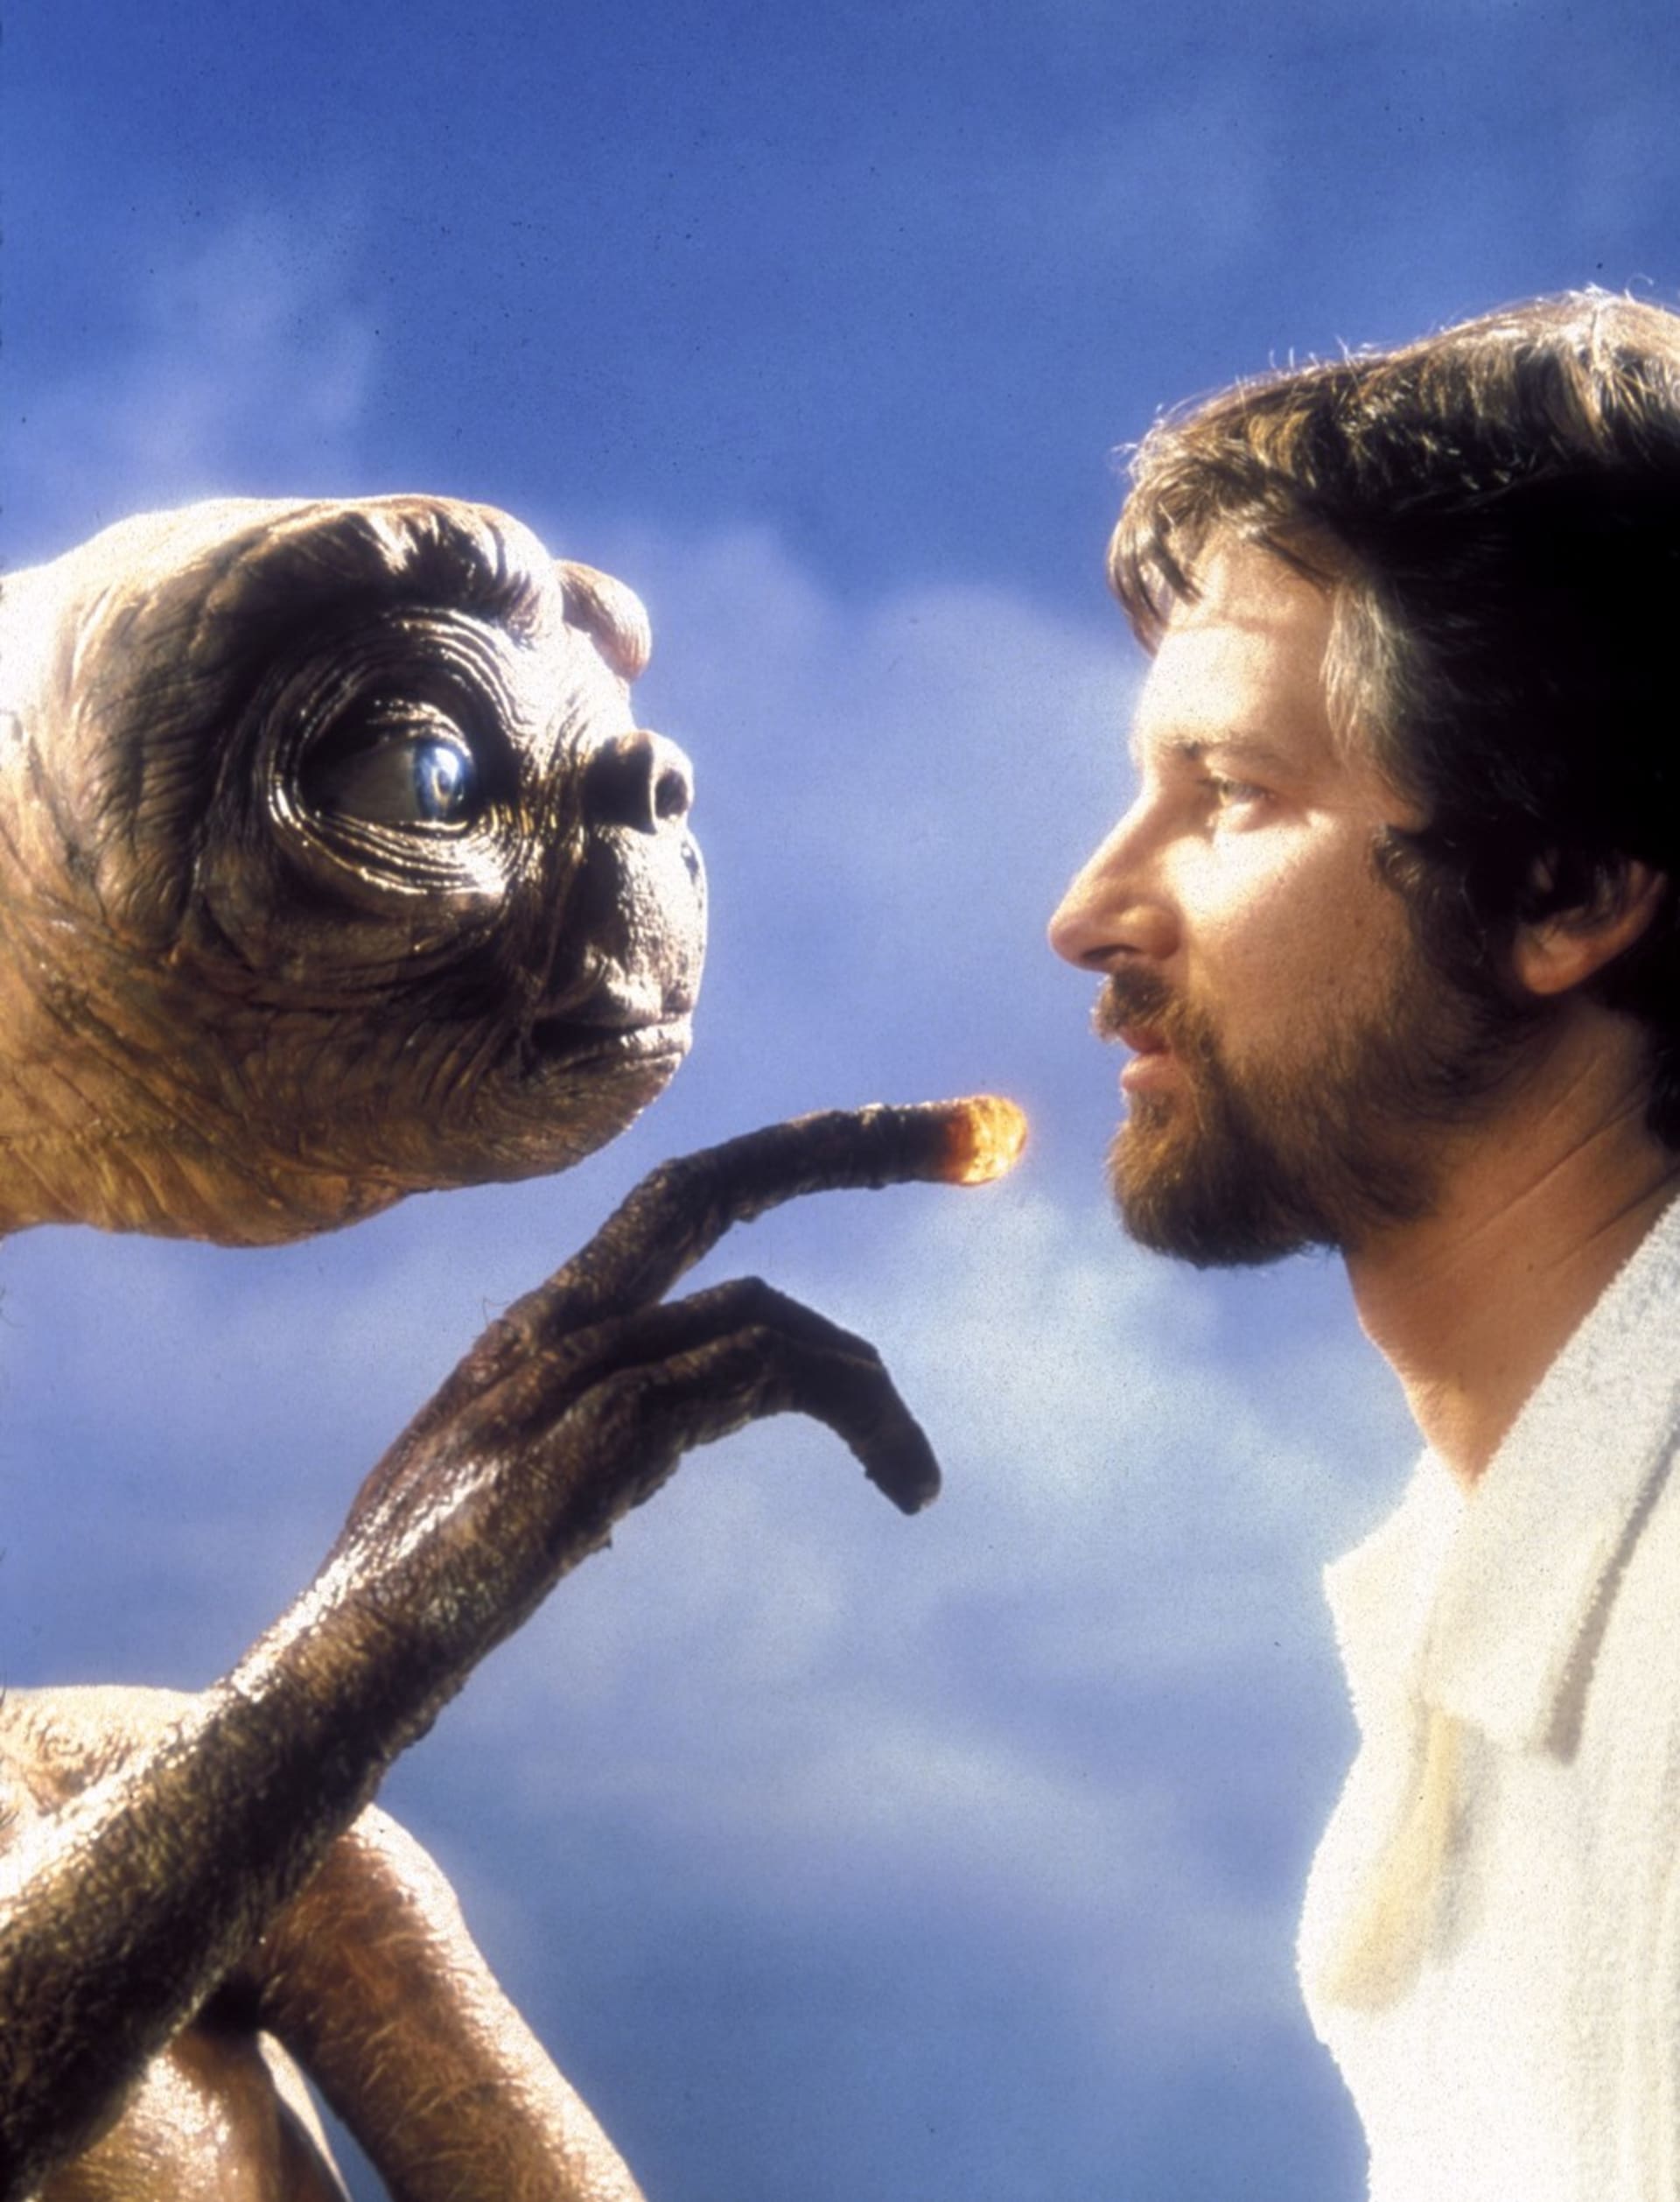 Takhle si lidé v 80. letech představovali kontakt s mimozemšťany: E.T. - Mimozemšťan a Steven Spielberg